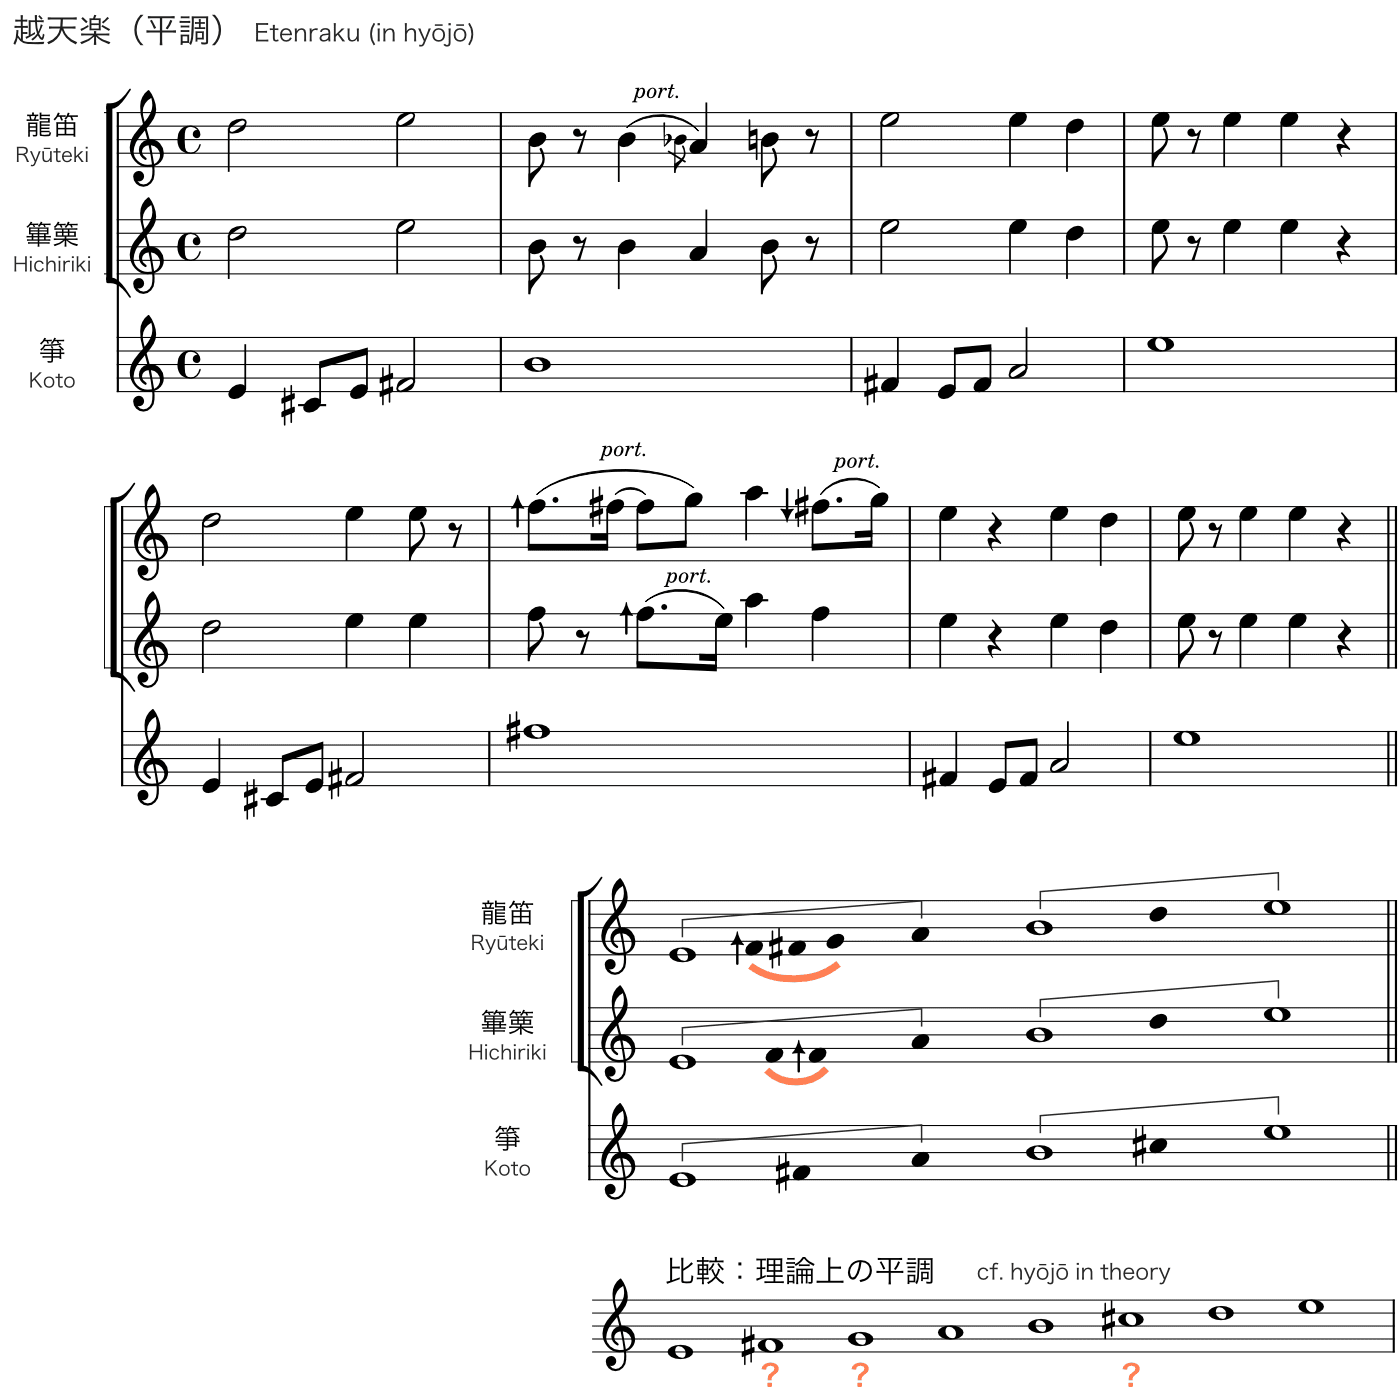 『越天楽（平調）』七声と装飾音の関係・メロディー/伴奏の音階の乖離